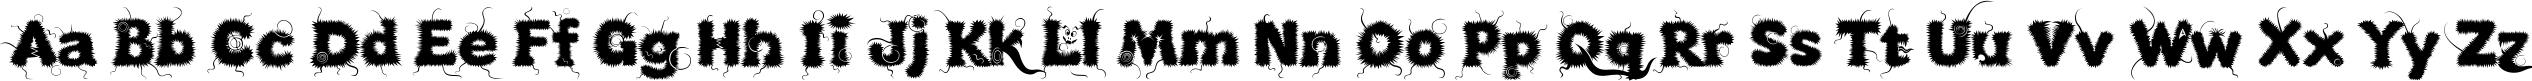 Пример написания английского алфавита шрифтом Kingthings Lupineless